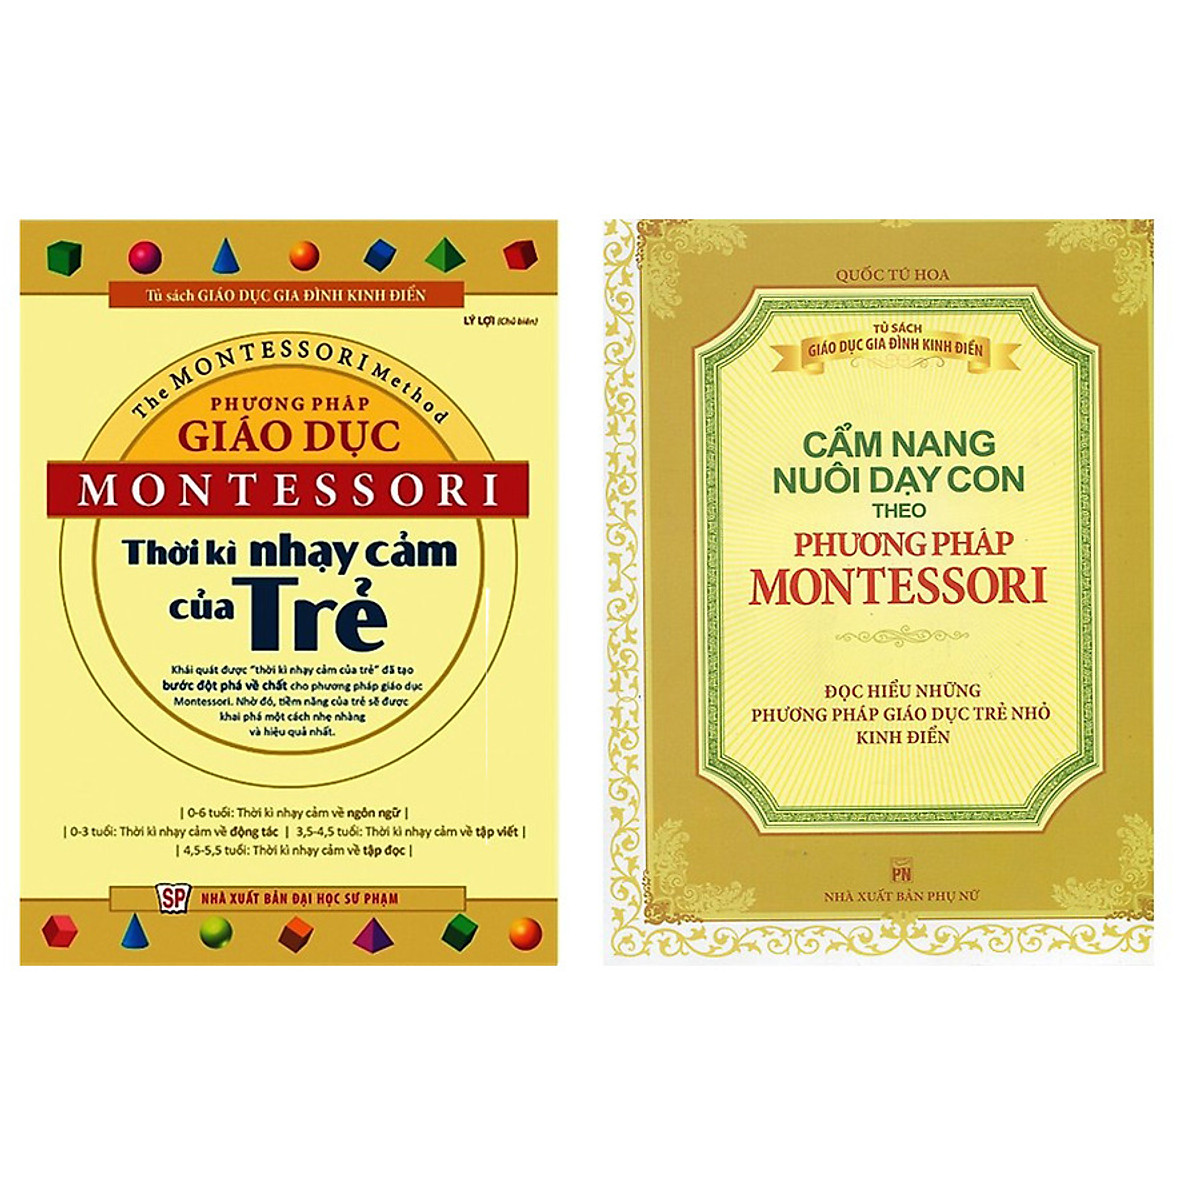 Combo sách montessori : Phương Pháp Giáo Dục Montessori - Thời Kỳ Nhạy Cảm Của Trẻ và Phương Pháp Montessori - Cẩm Nang Nuôi Dạy Con + Tặng 1 cuốn truyện song ngữ bìa mềm ngẫu nhiên